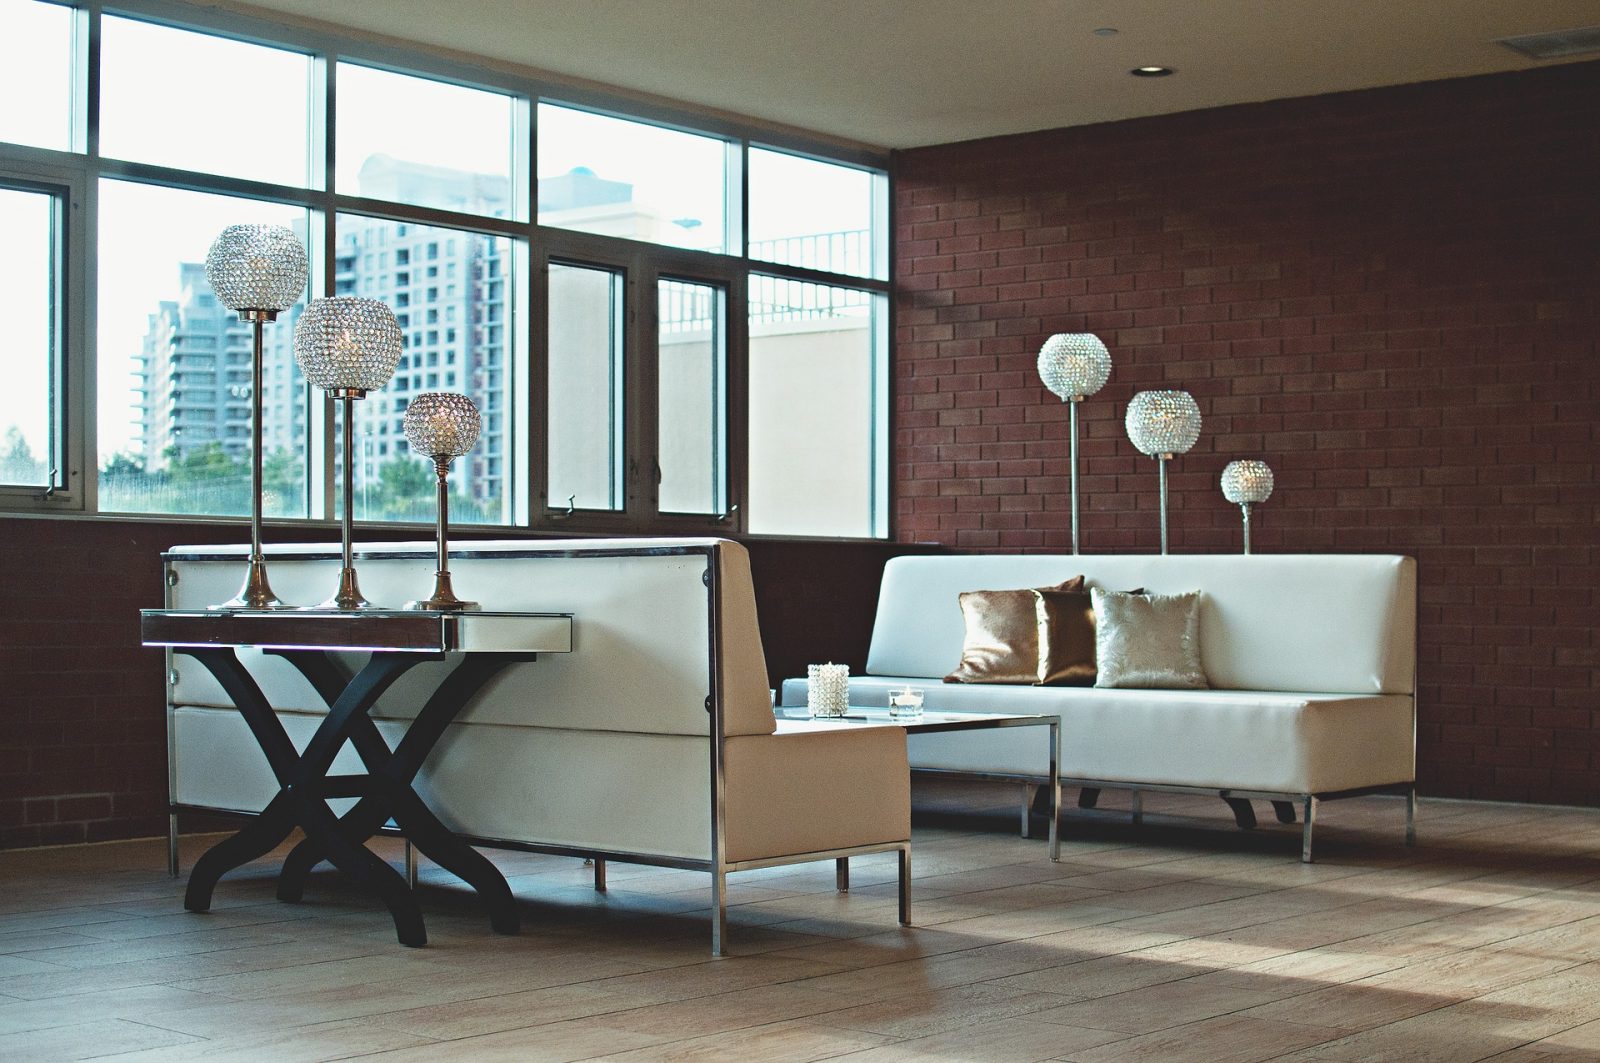 Loft style – styl industrialny we wnętrzach mieszkań